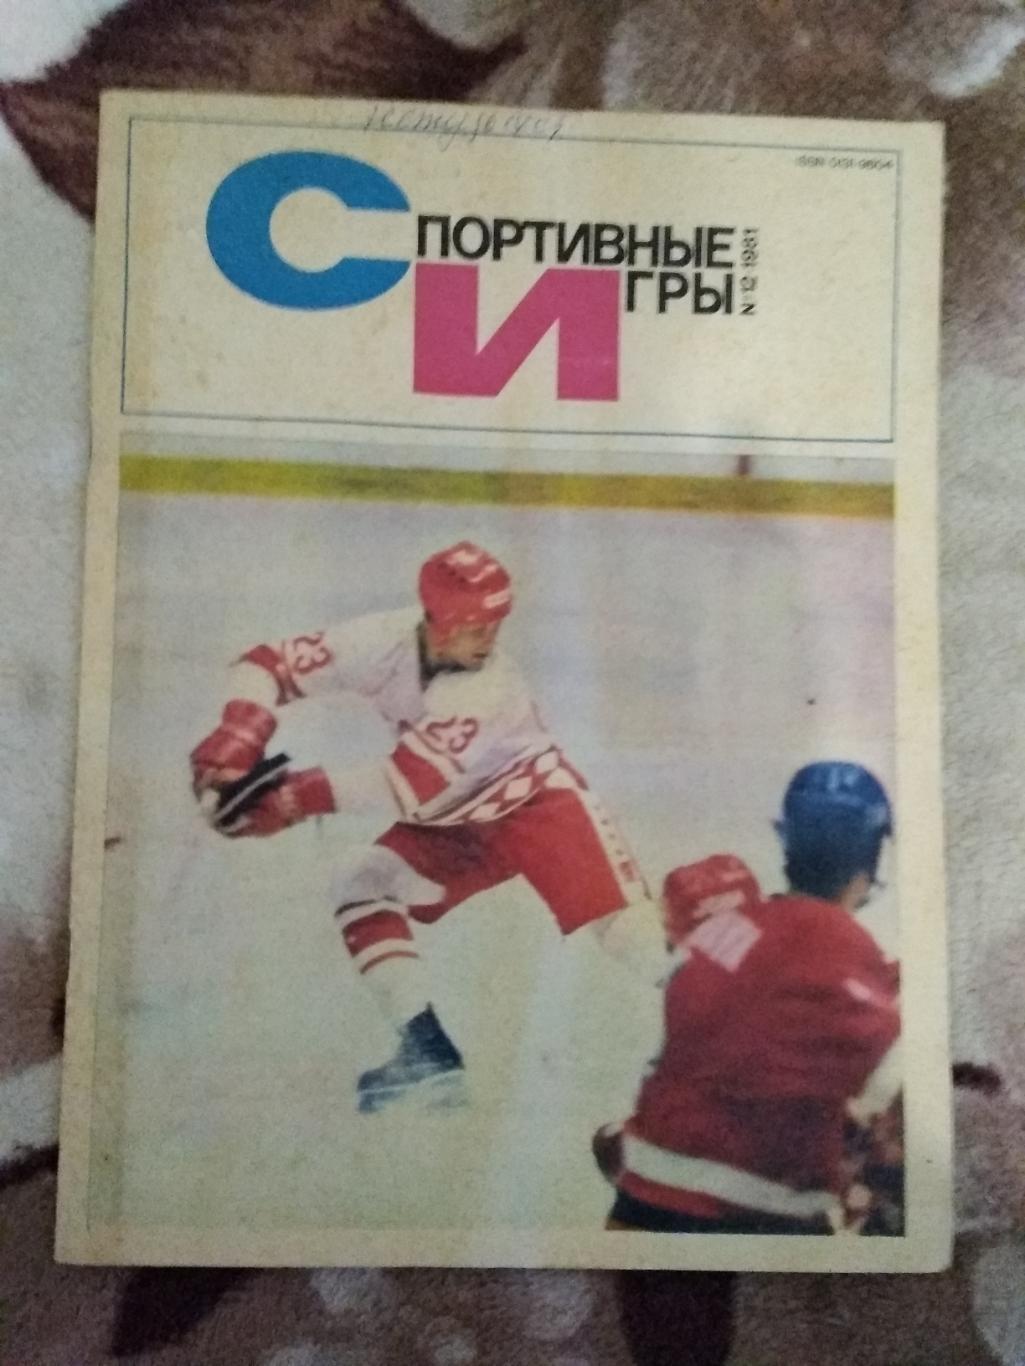 Журнал.Спортивные игры № 12 1981 г.